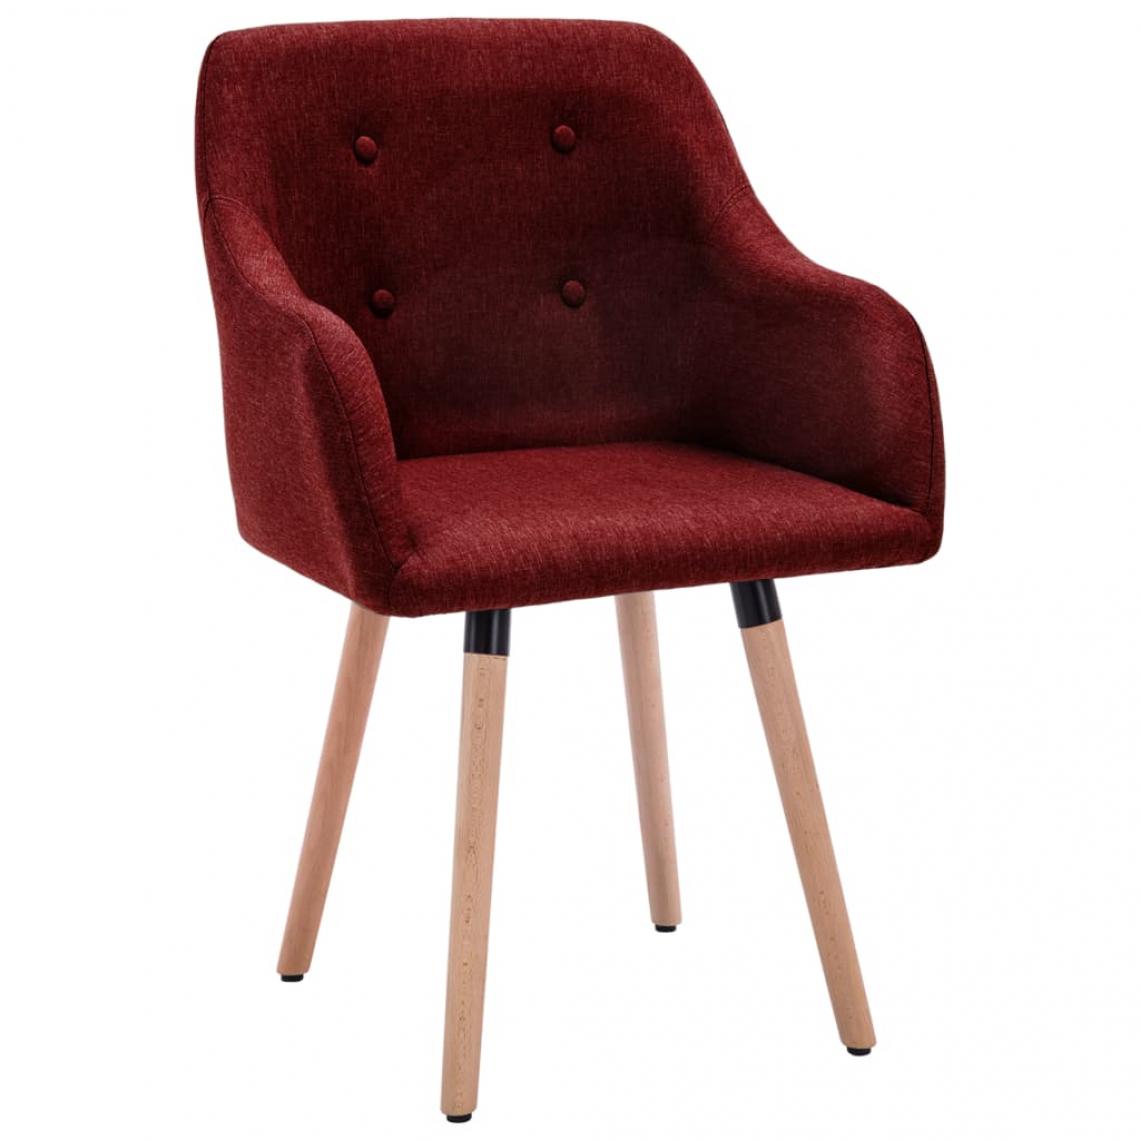 Decoshop26 - Lot de 4 chaises de salle à manger cuisine design moderne tissu rouge bordeaux CDS021948 - Chaises